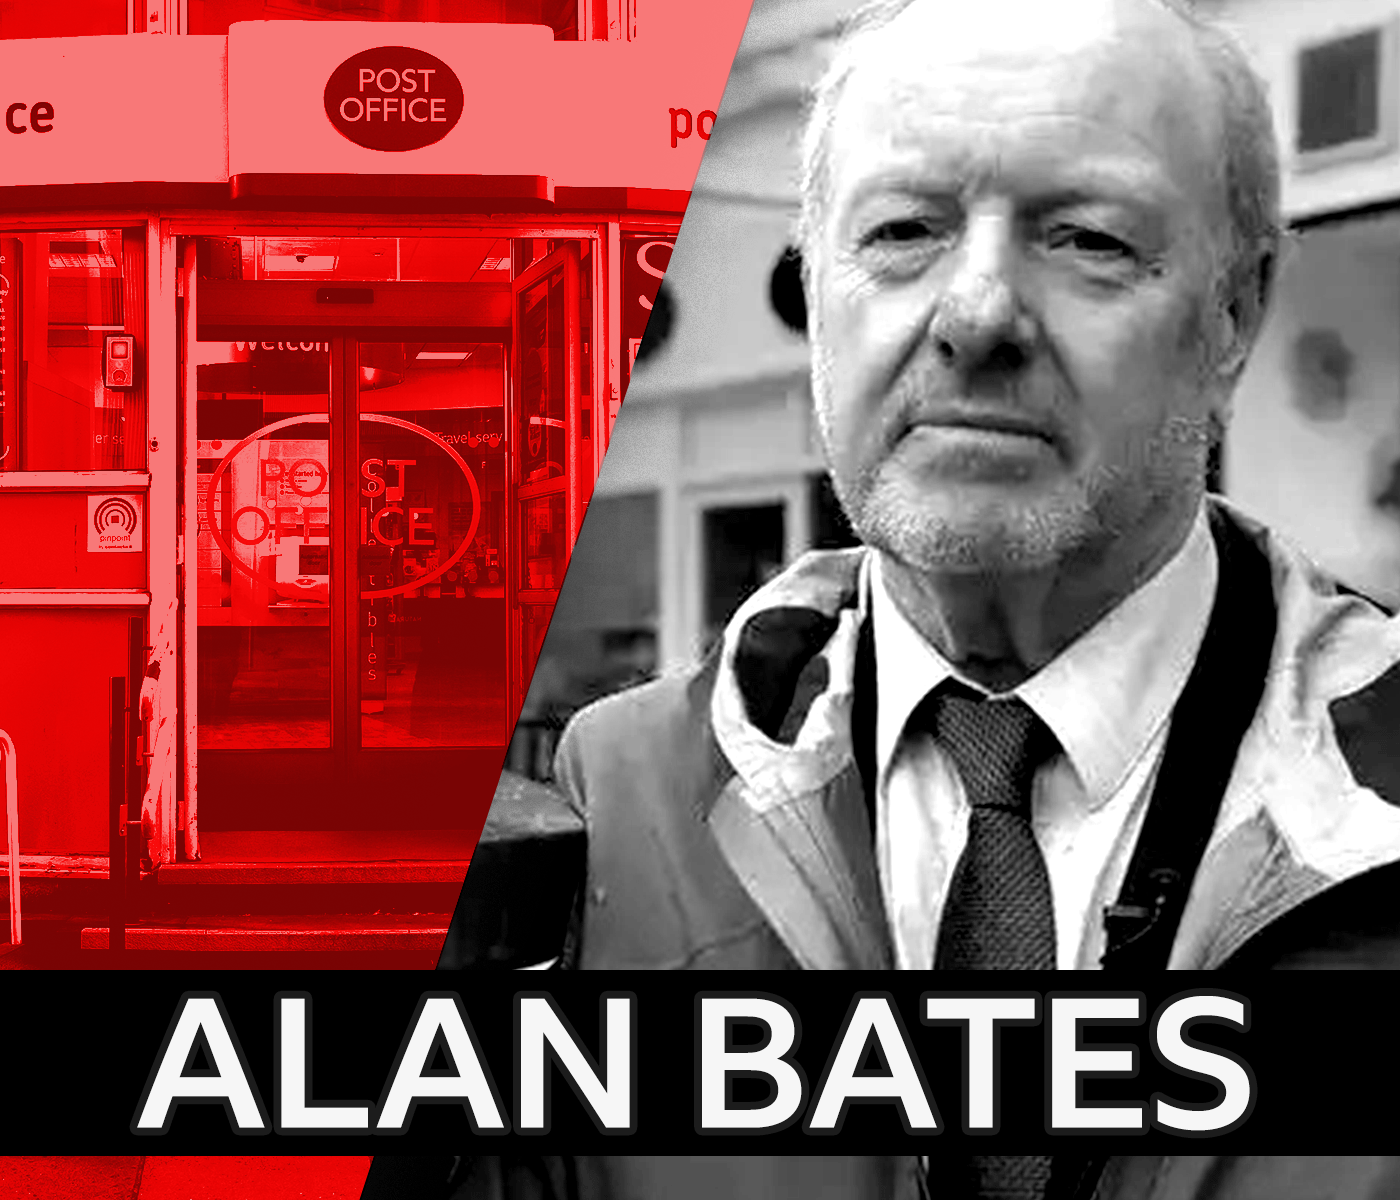 Photograph of Alan Bates